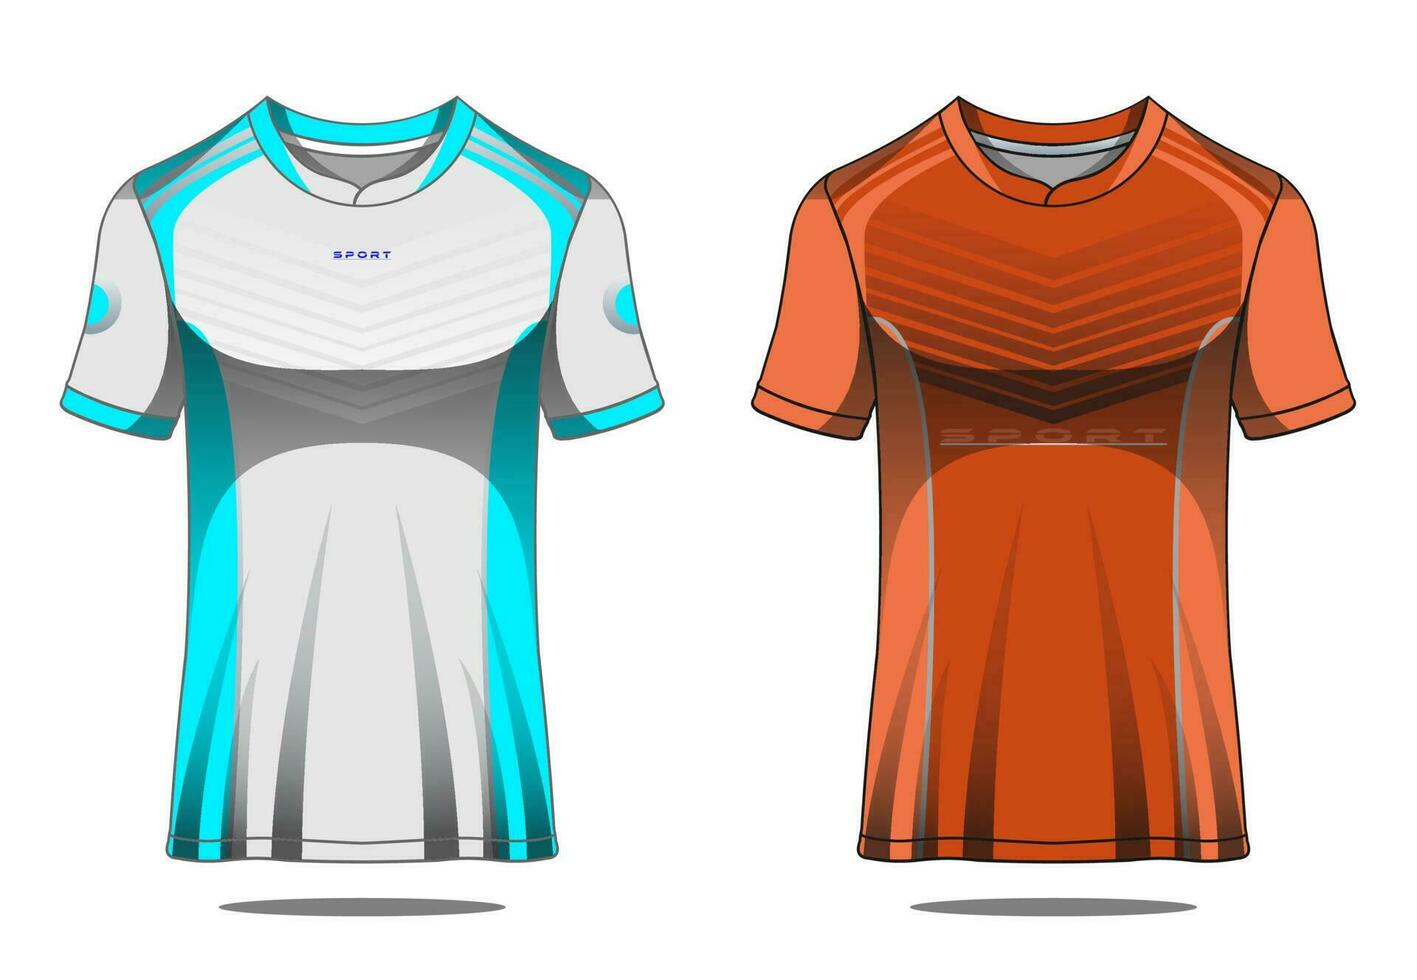 diseño de fútbol de textura abstracta de deportes de camiseta para carreras de fútbol, juegos de motocross, juegos de ciclismo. vector